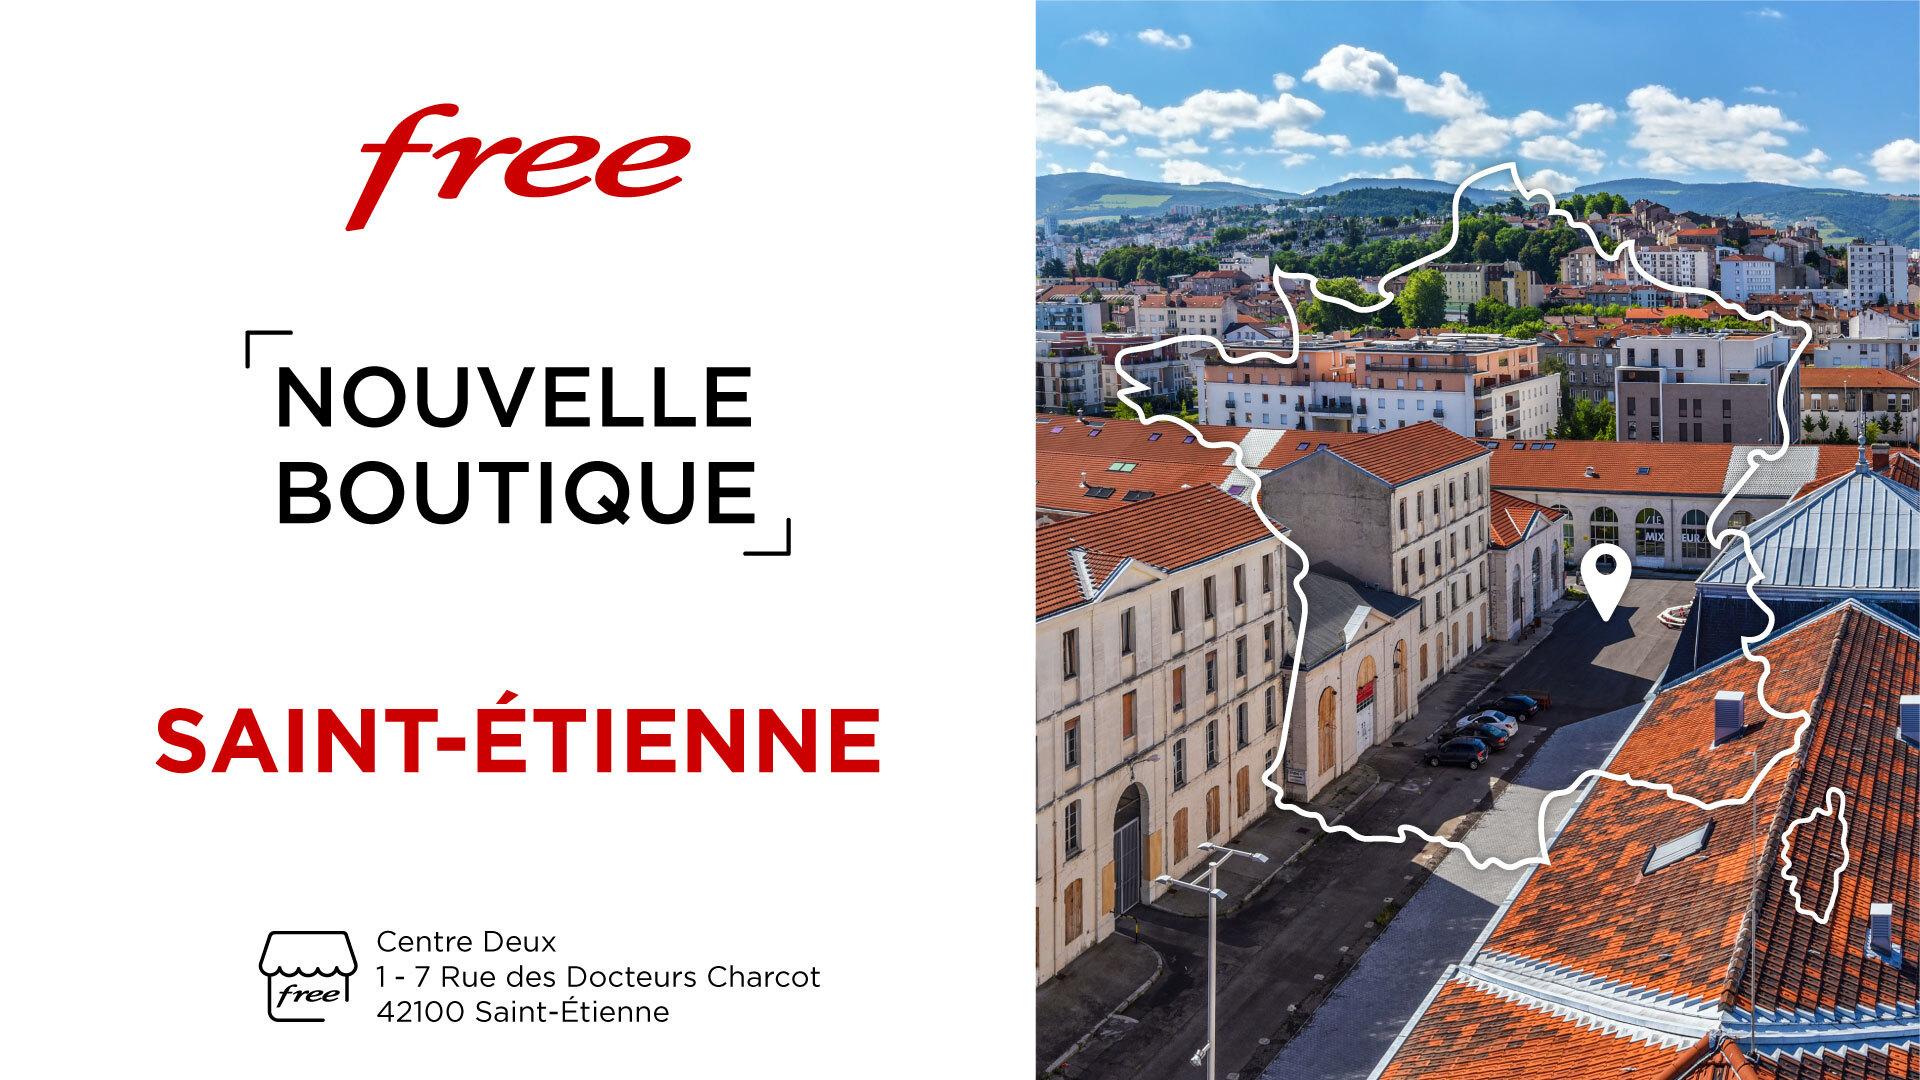 Découvrez la nouvelle boutique Free à Saint-Etienne